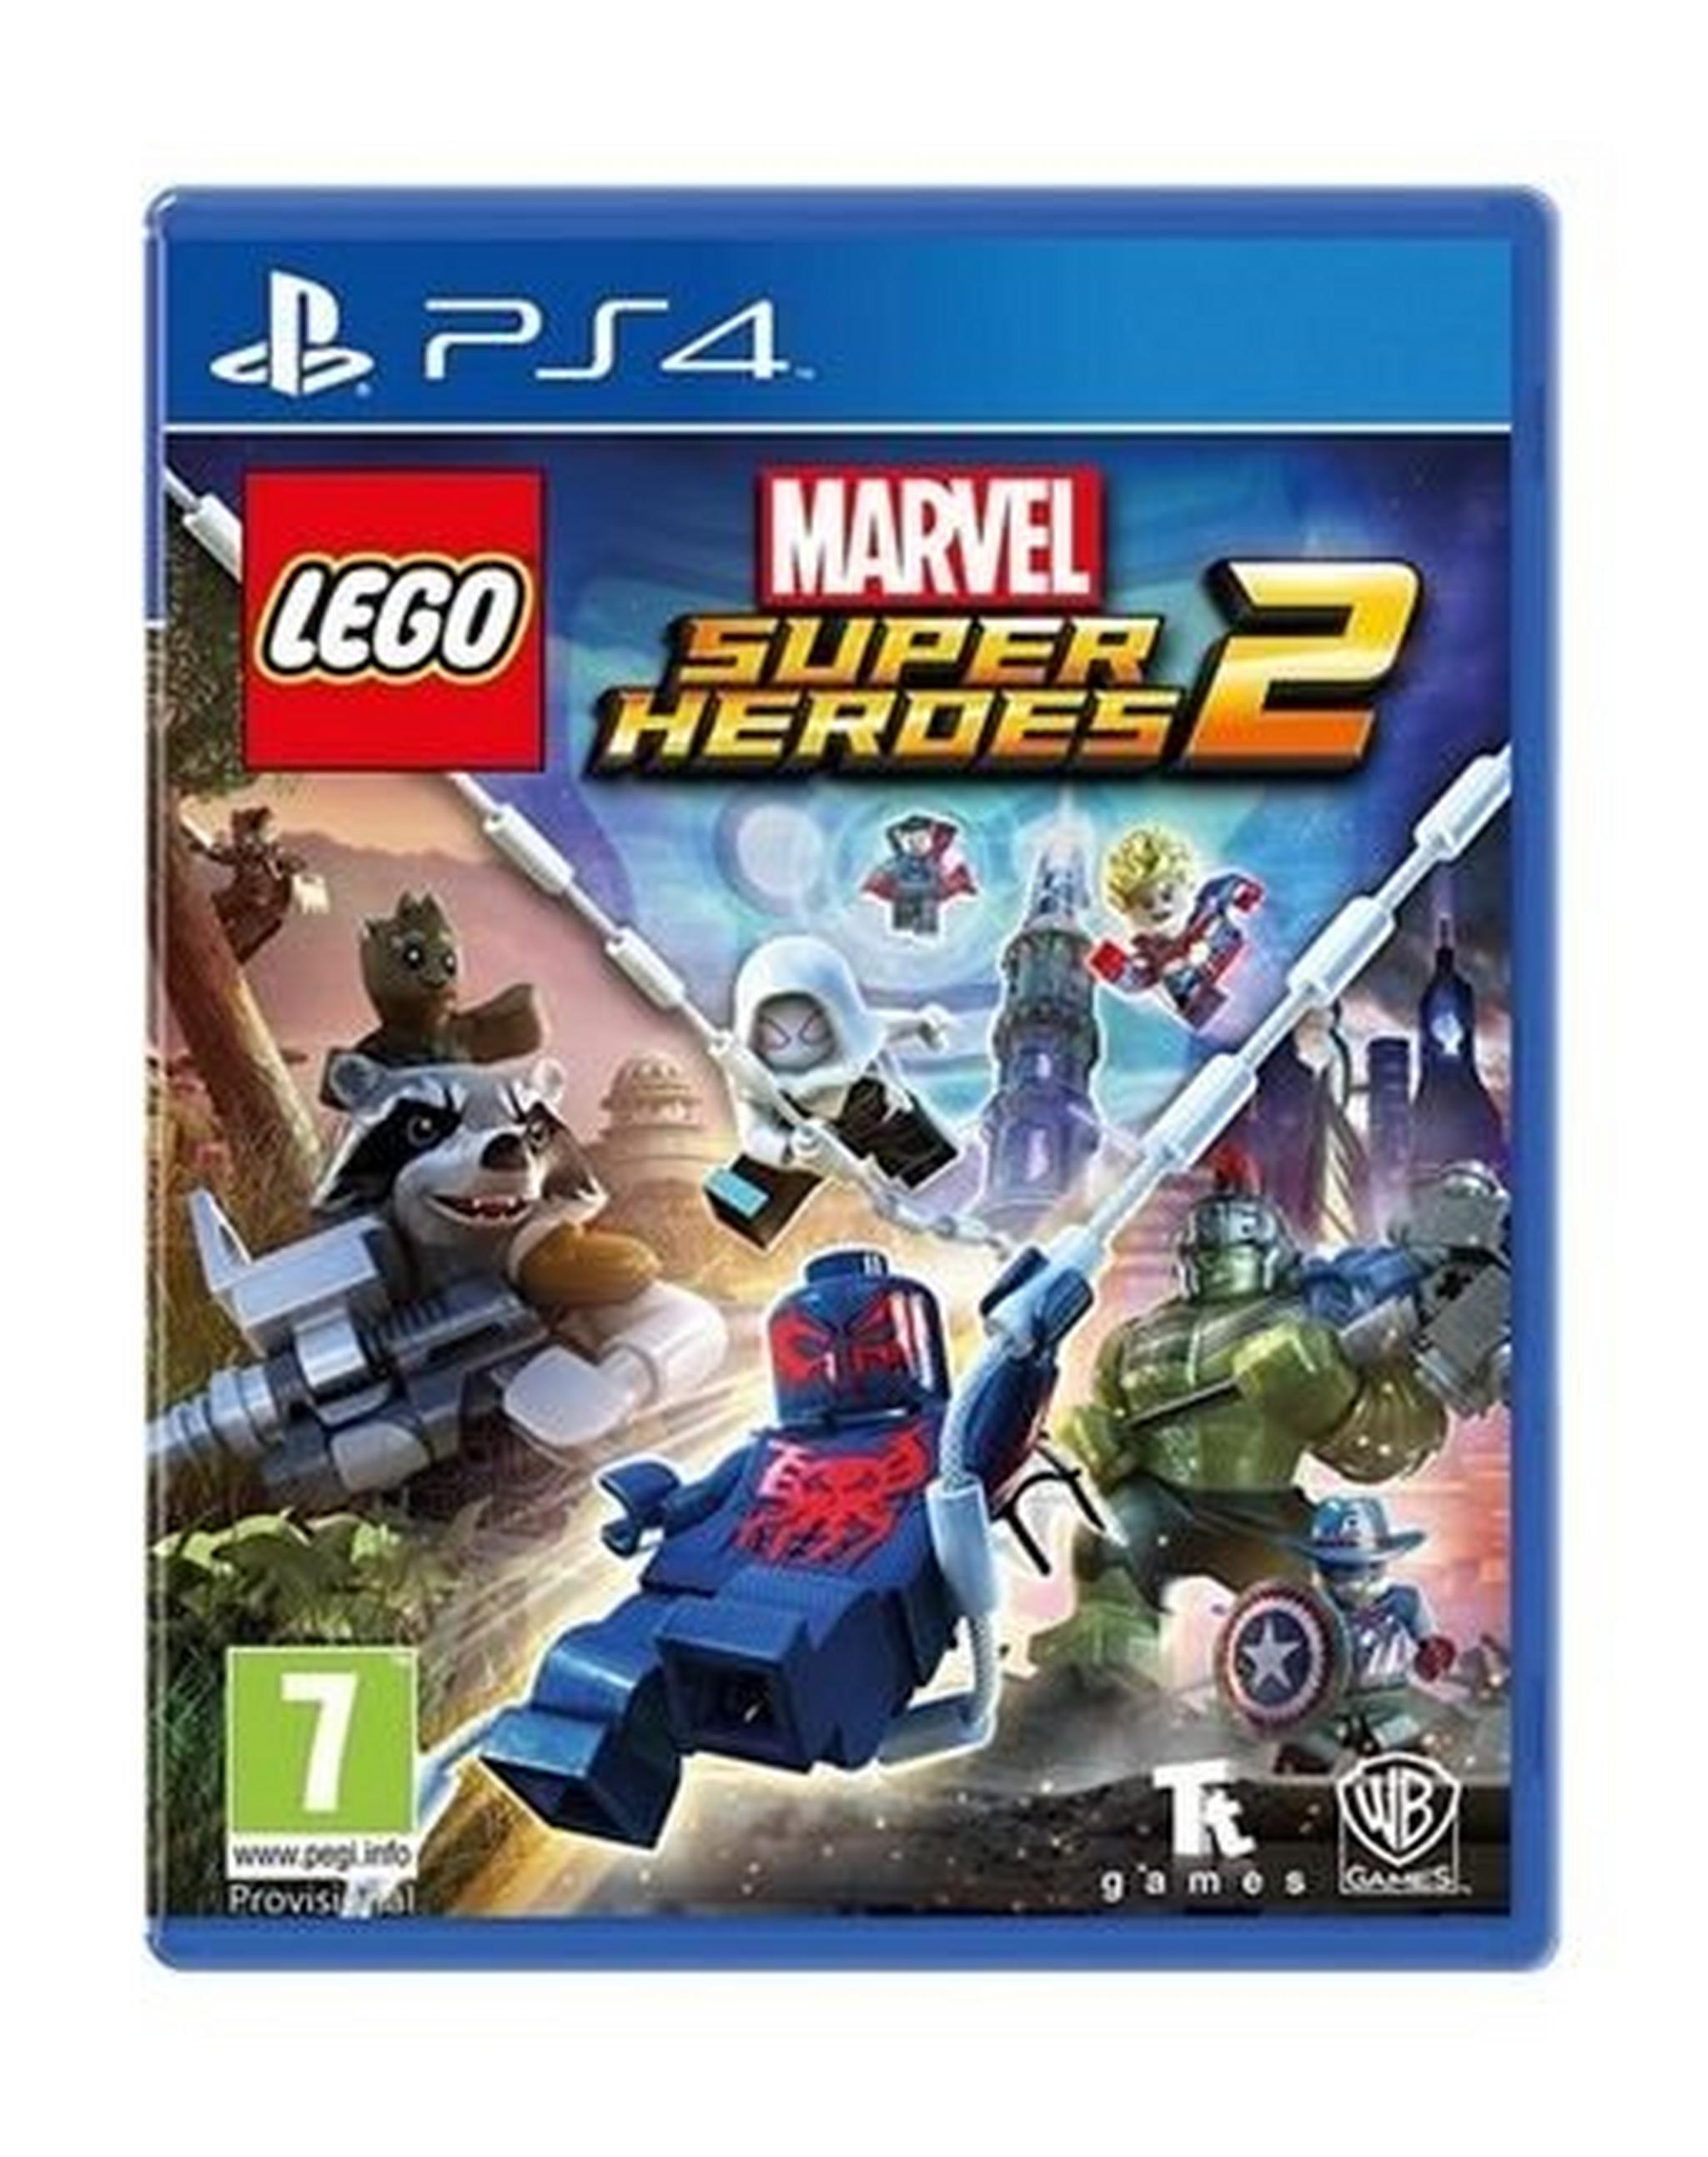 LEGO Marvel Super Heroes 2 - PlayStation 4 Game